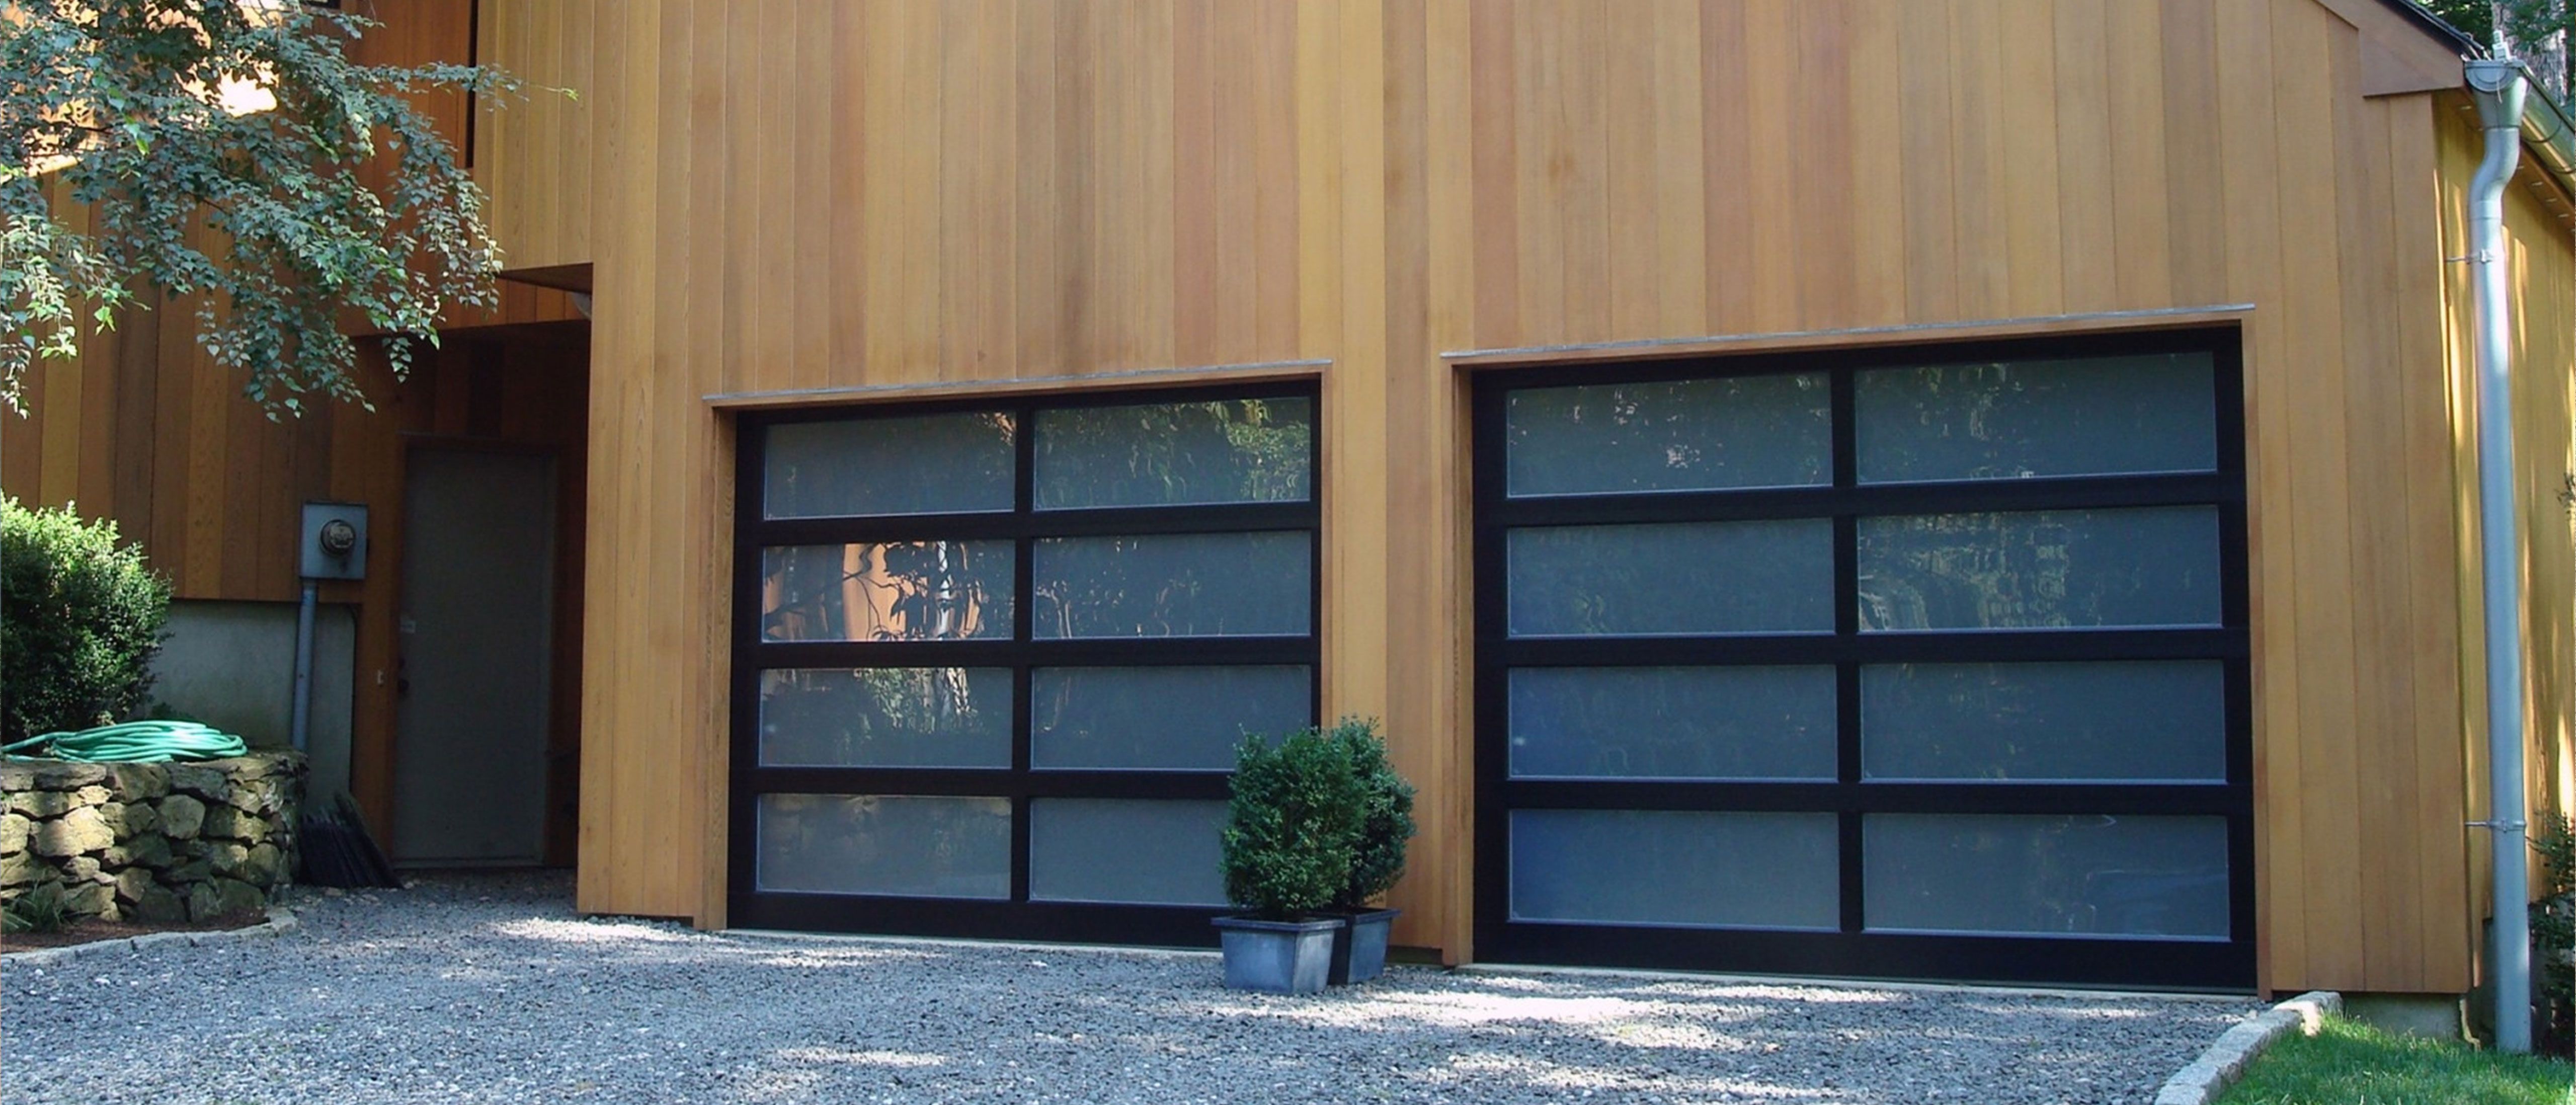 Porte Garage Passive House Installazione Preventivo Costo Casa Villa Villetta residenziali  industriali aziendali Porte tipo serrande  